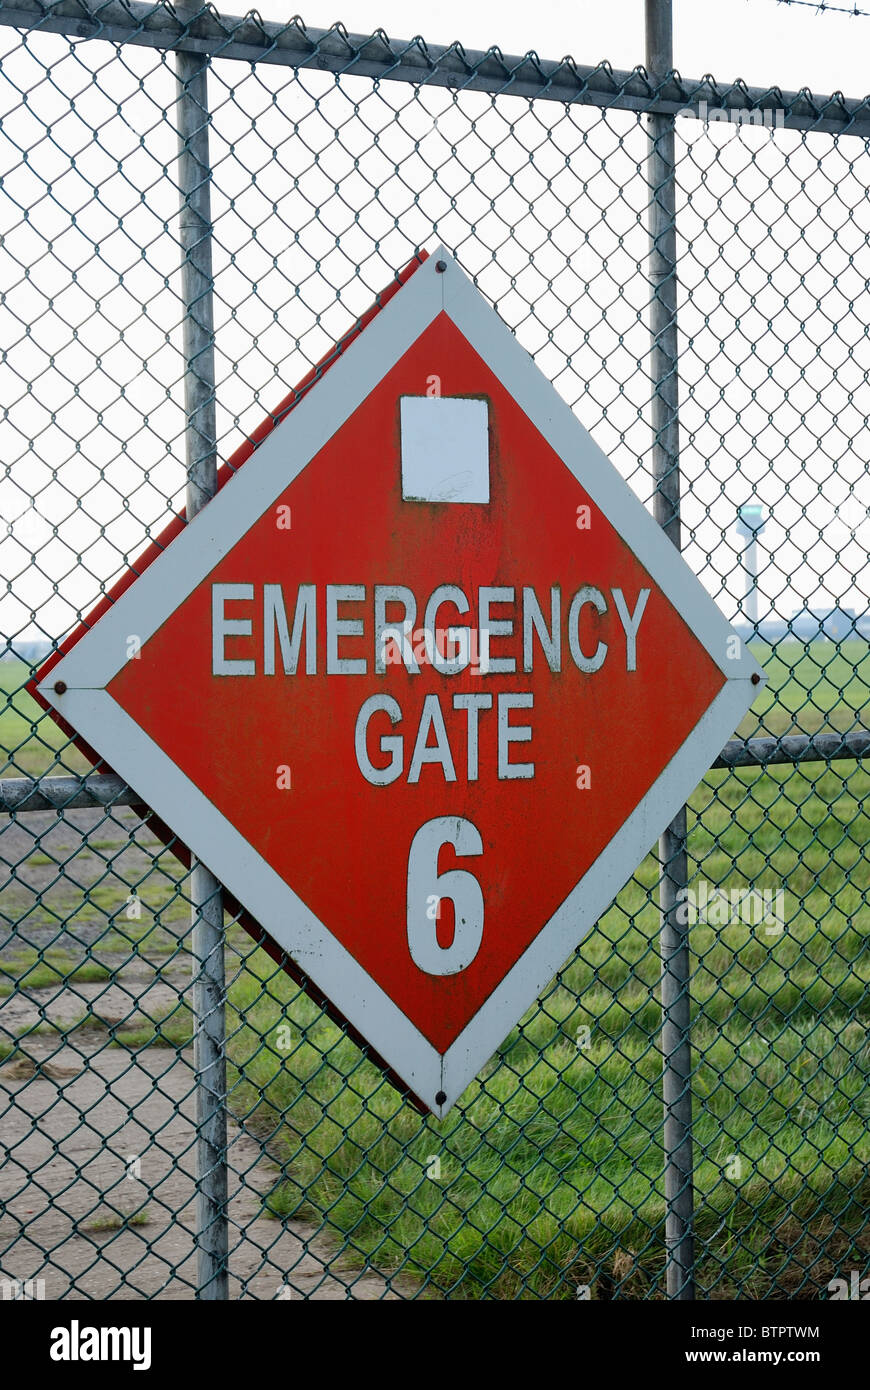 Aeropuerto de emergencia puerta del perímetro Foto de stock